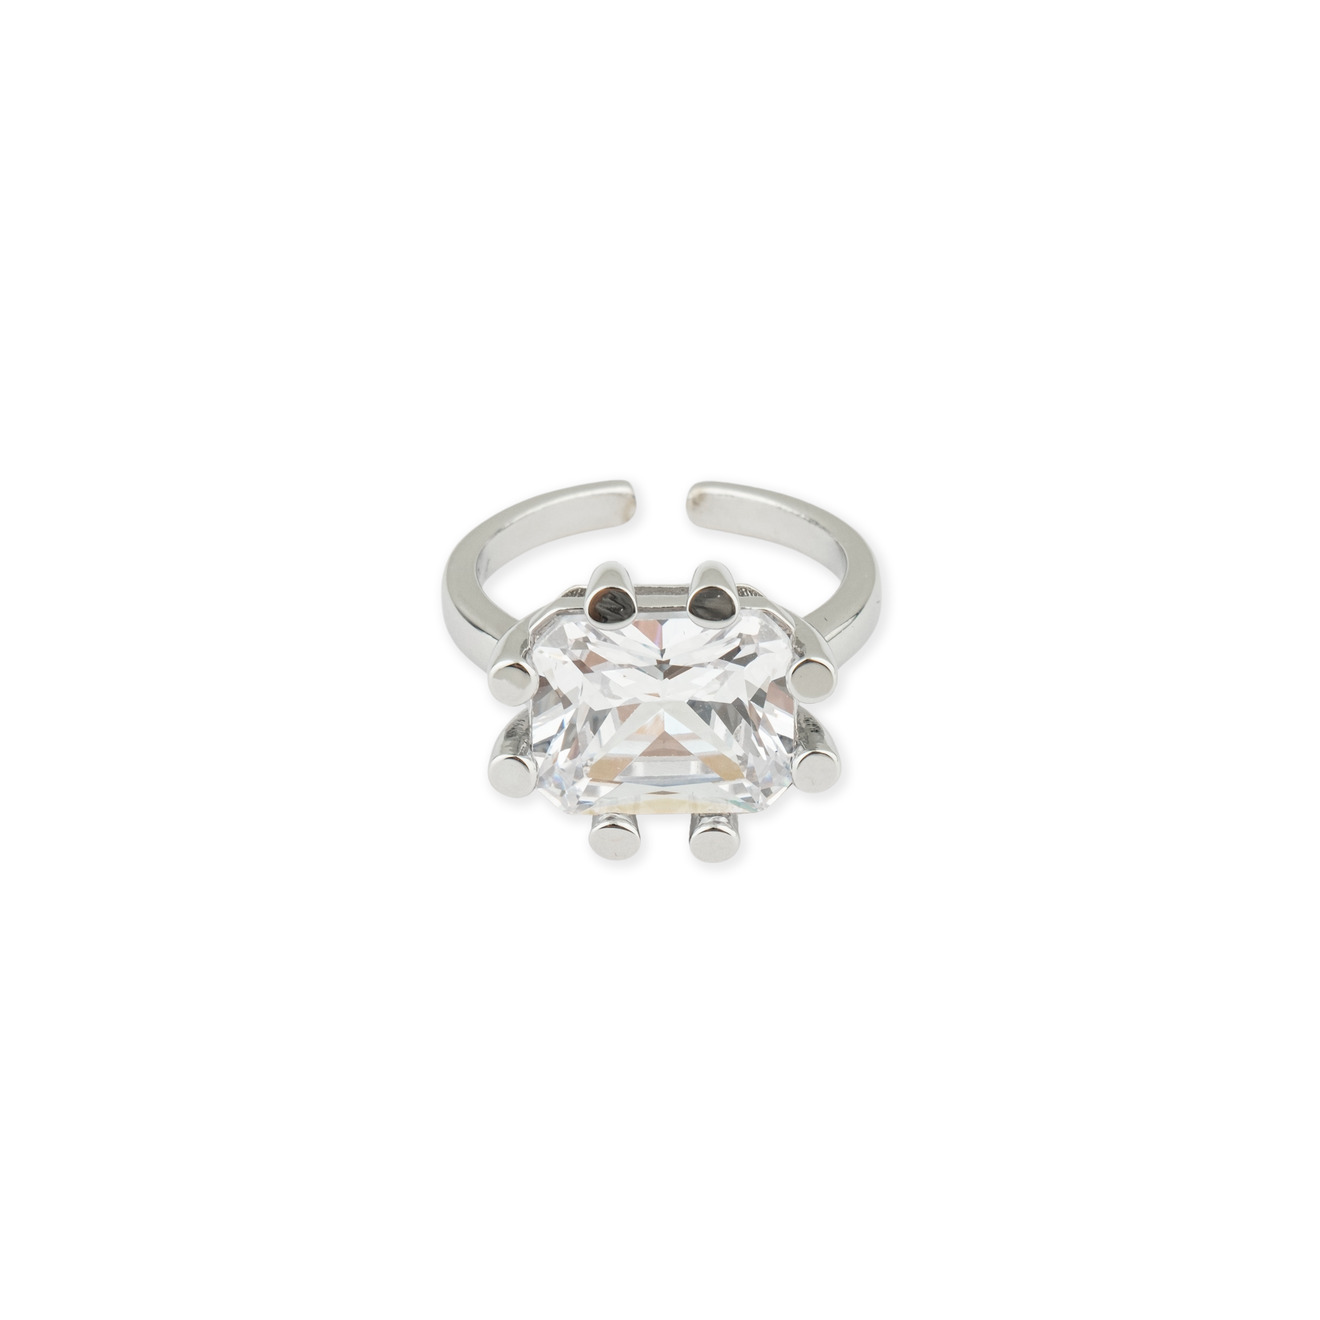 Herald Percy Серебристое кольцо с кристаллом herald percy золотистое фигурное кольцо с зеленым сердцем